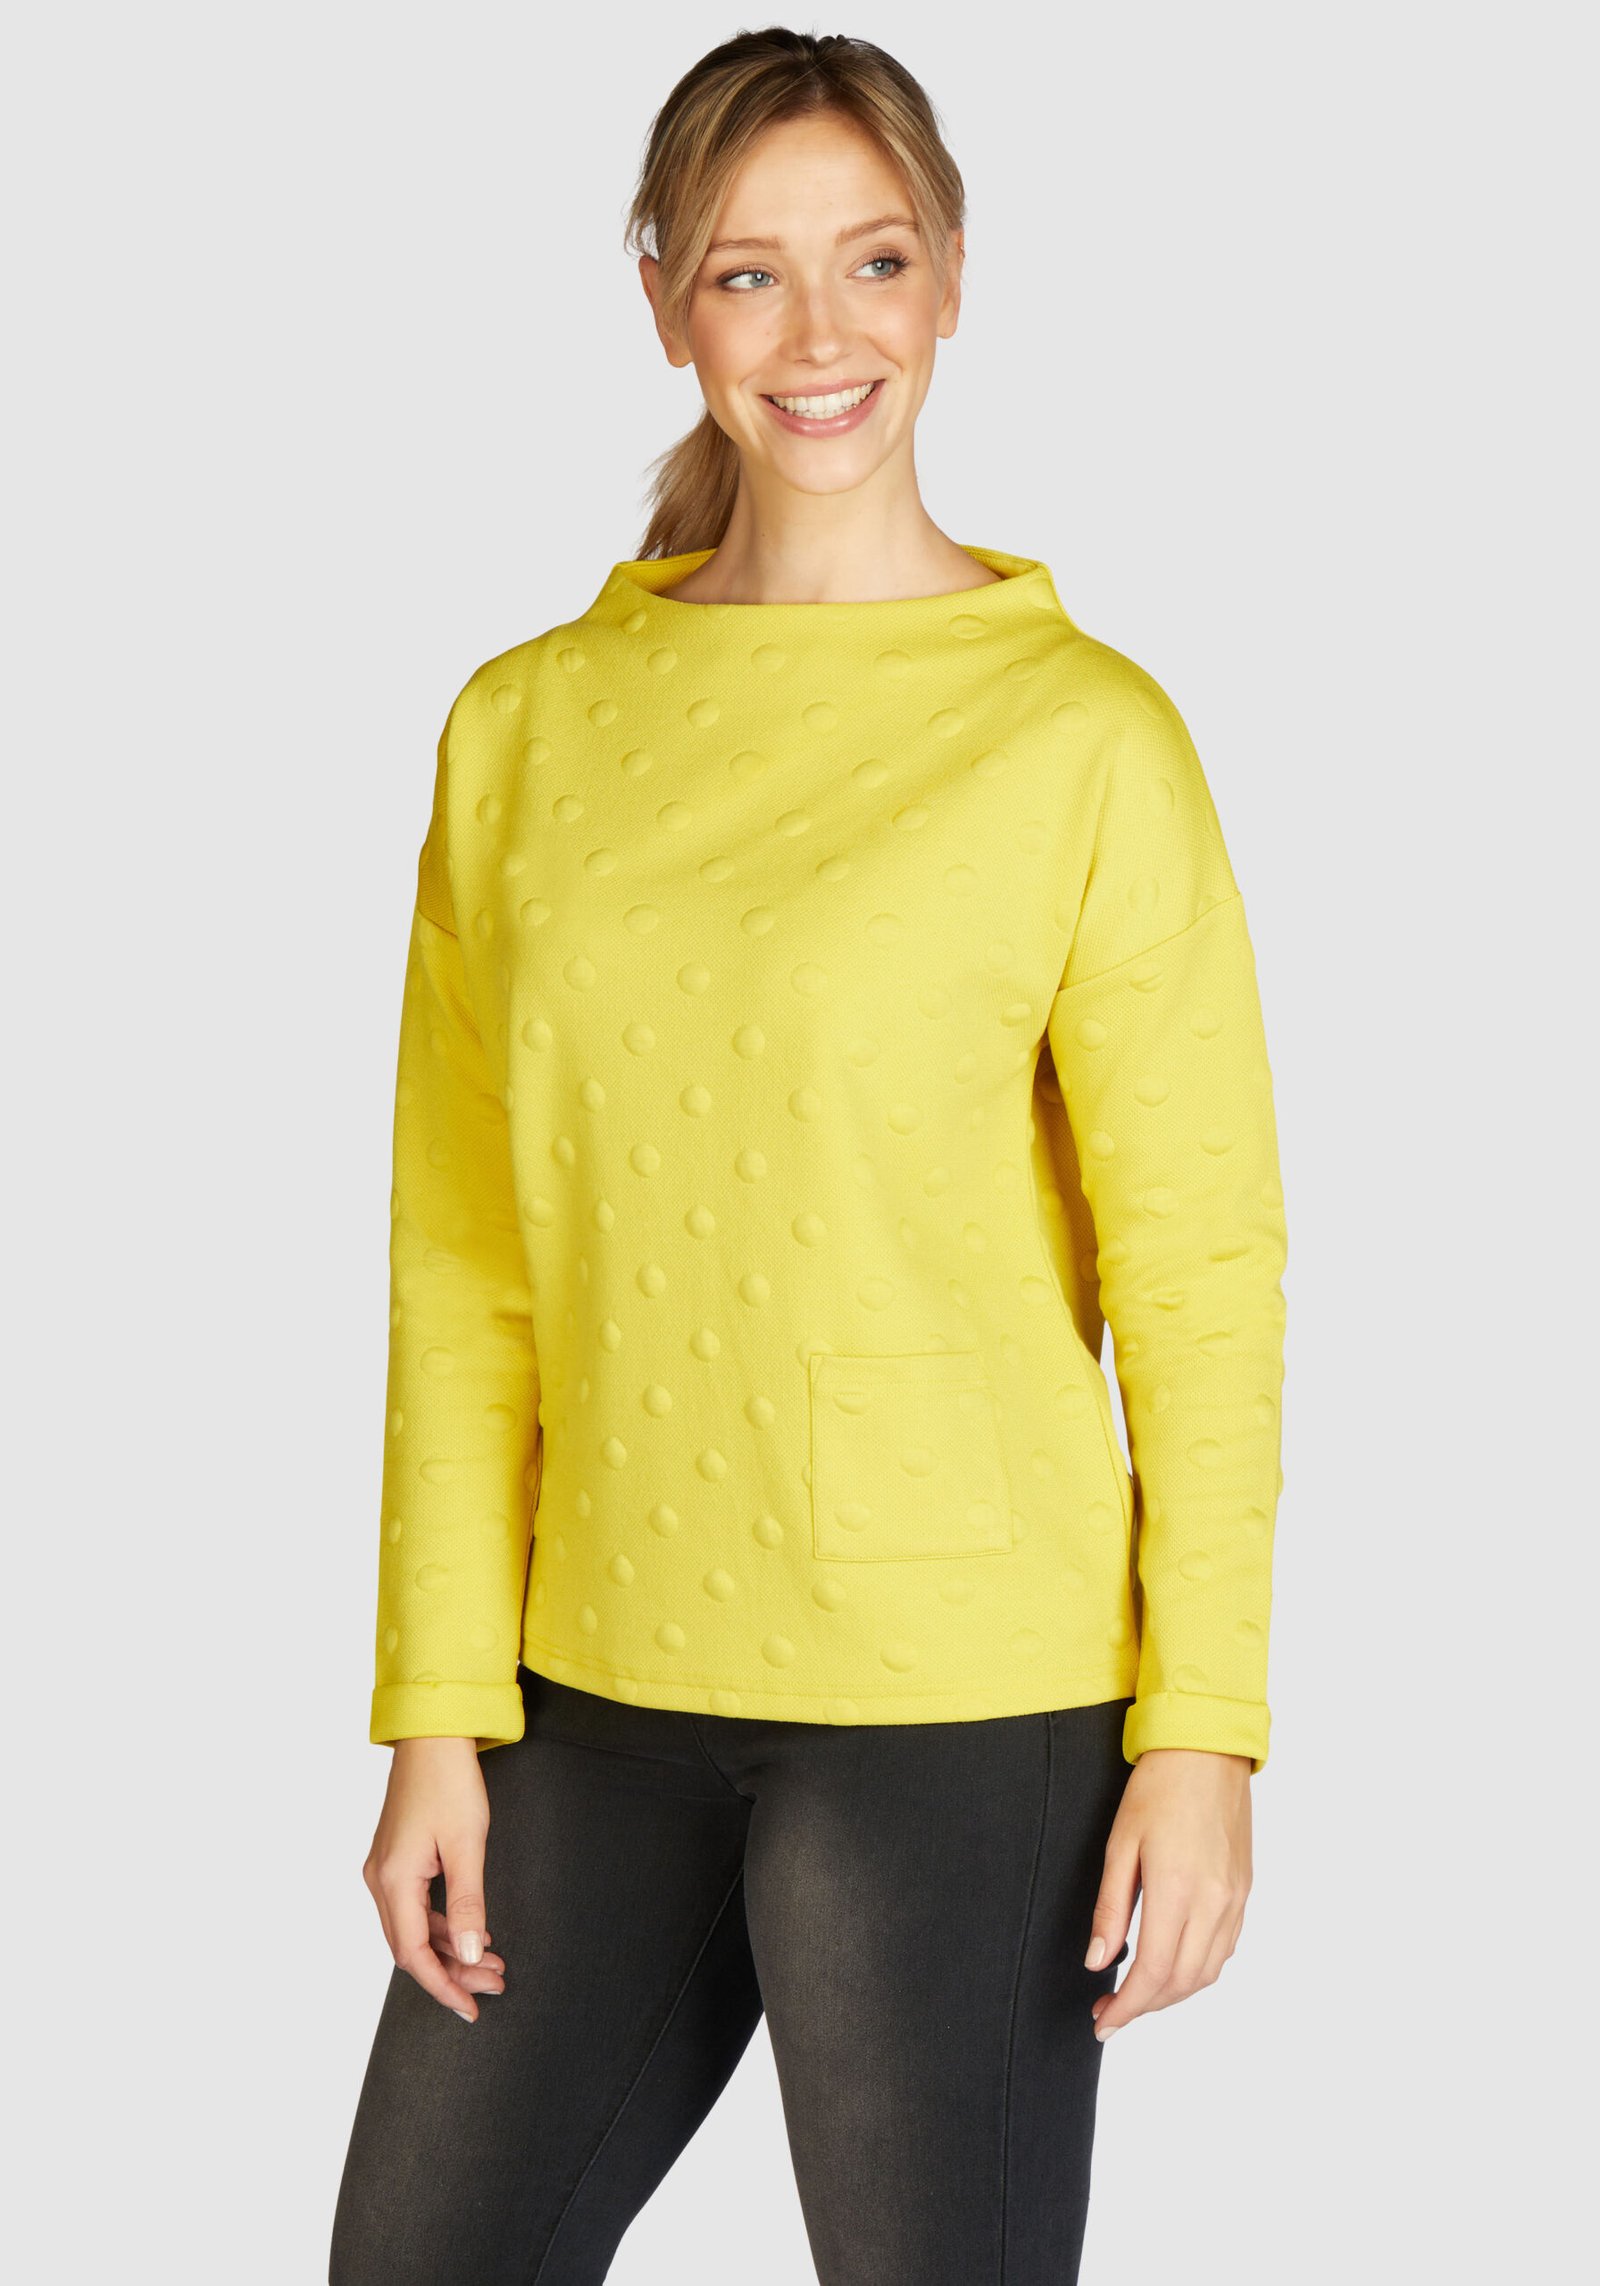 Damen Sweatshirt Gelb